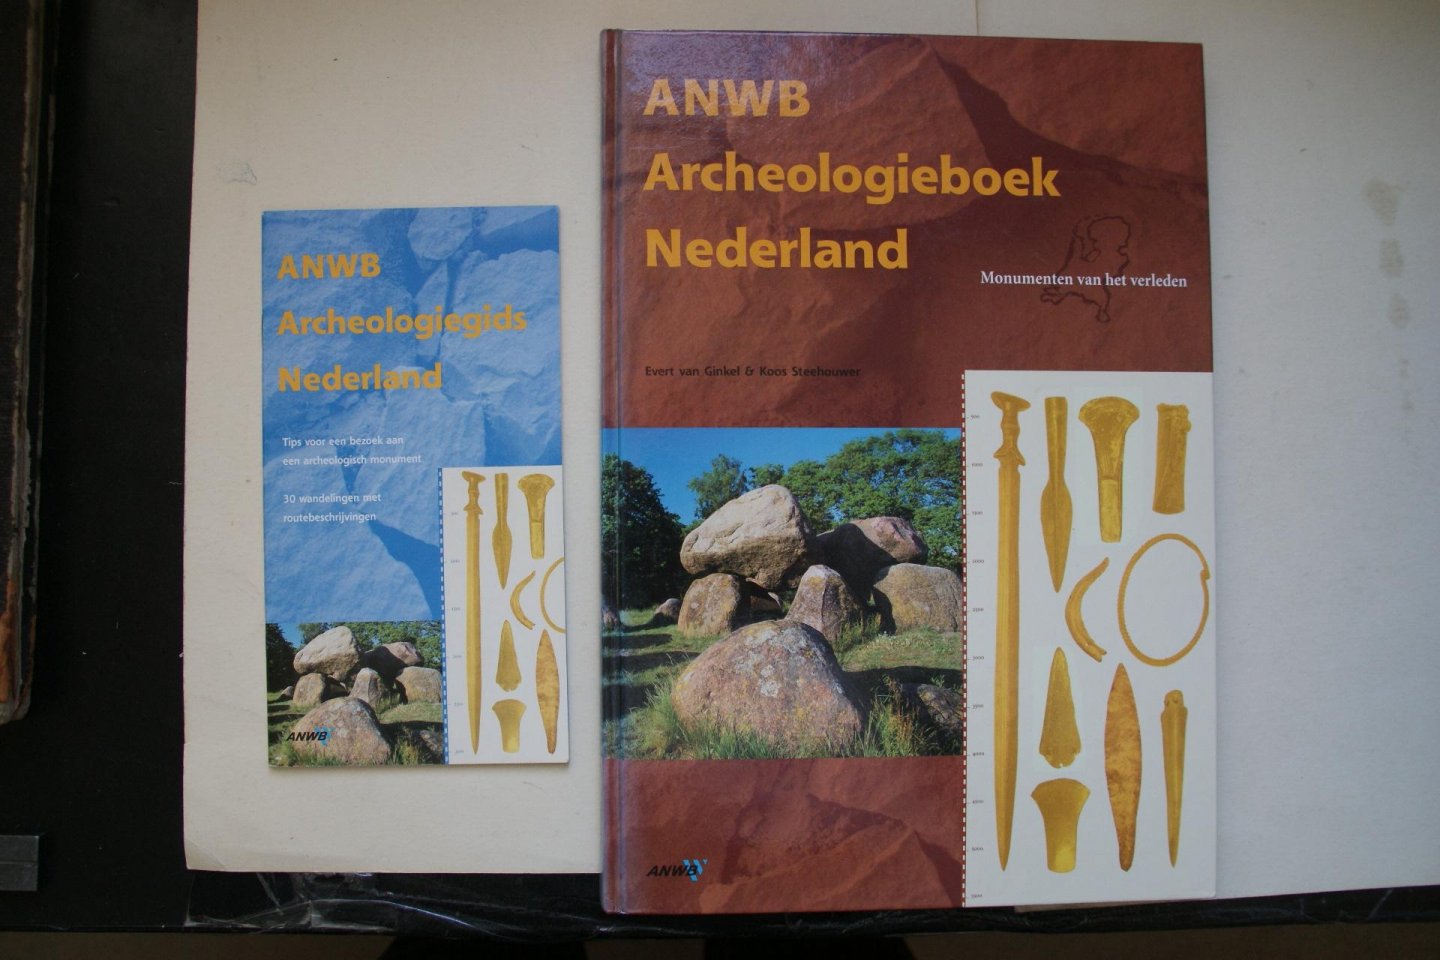 Evert van Ginkel  ; Steehouwer, Koos - ANWB  Archeologieboek Nederland  compleet met Boekje waarin 30 wandelingen staan met routebeschrijvingen